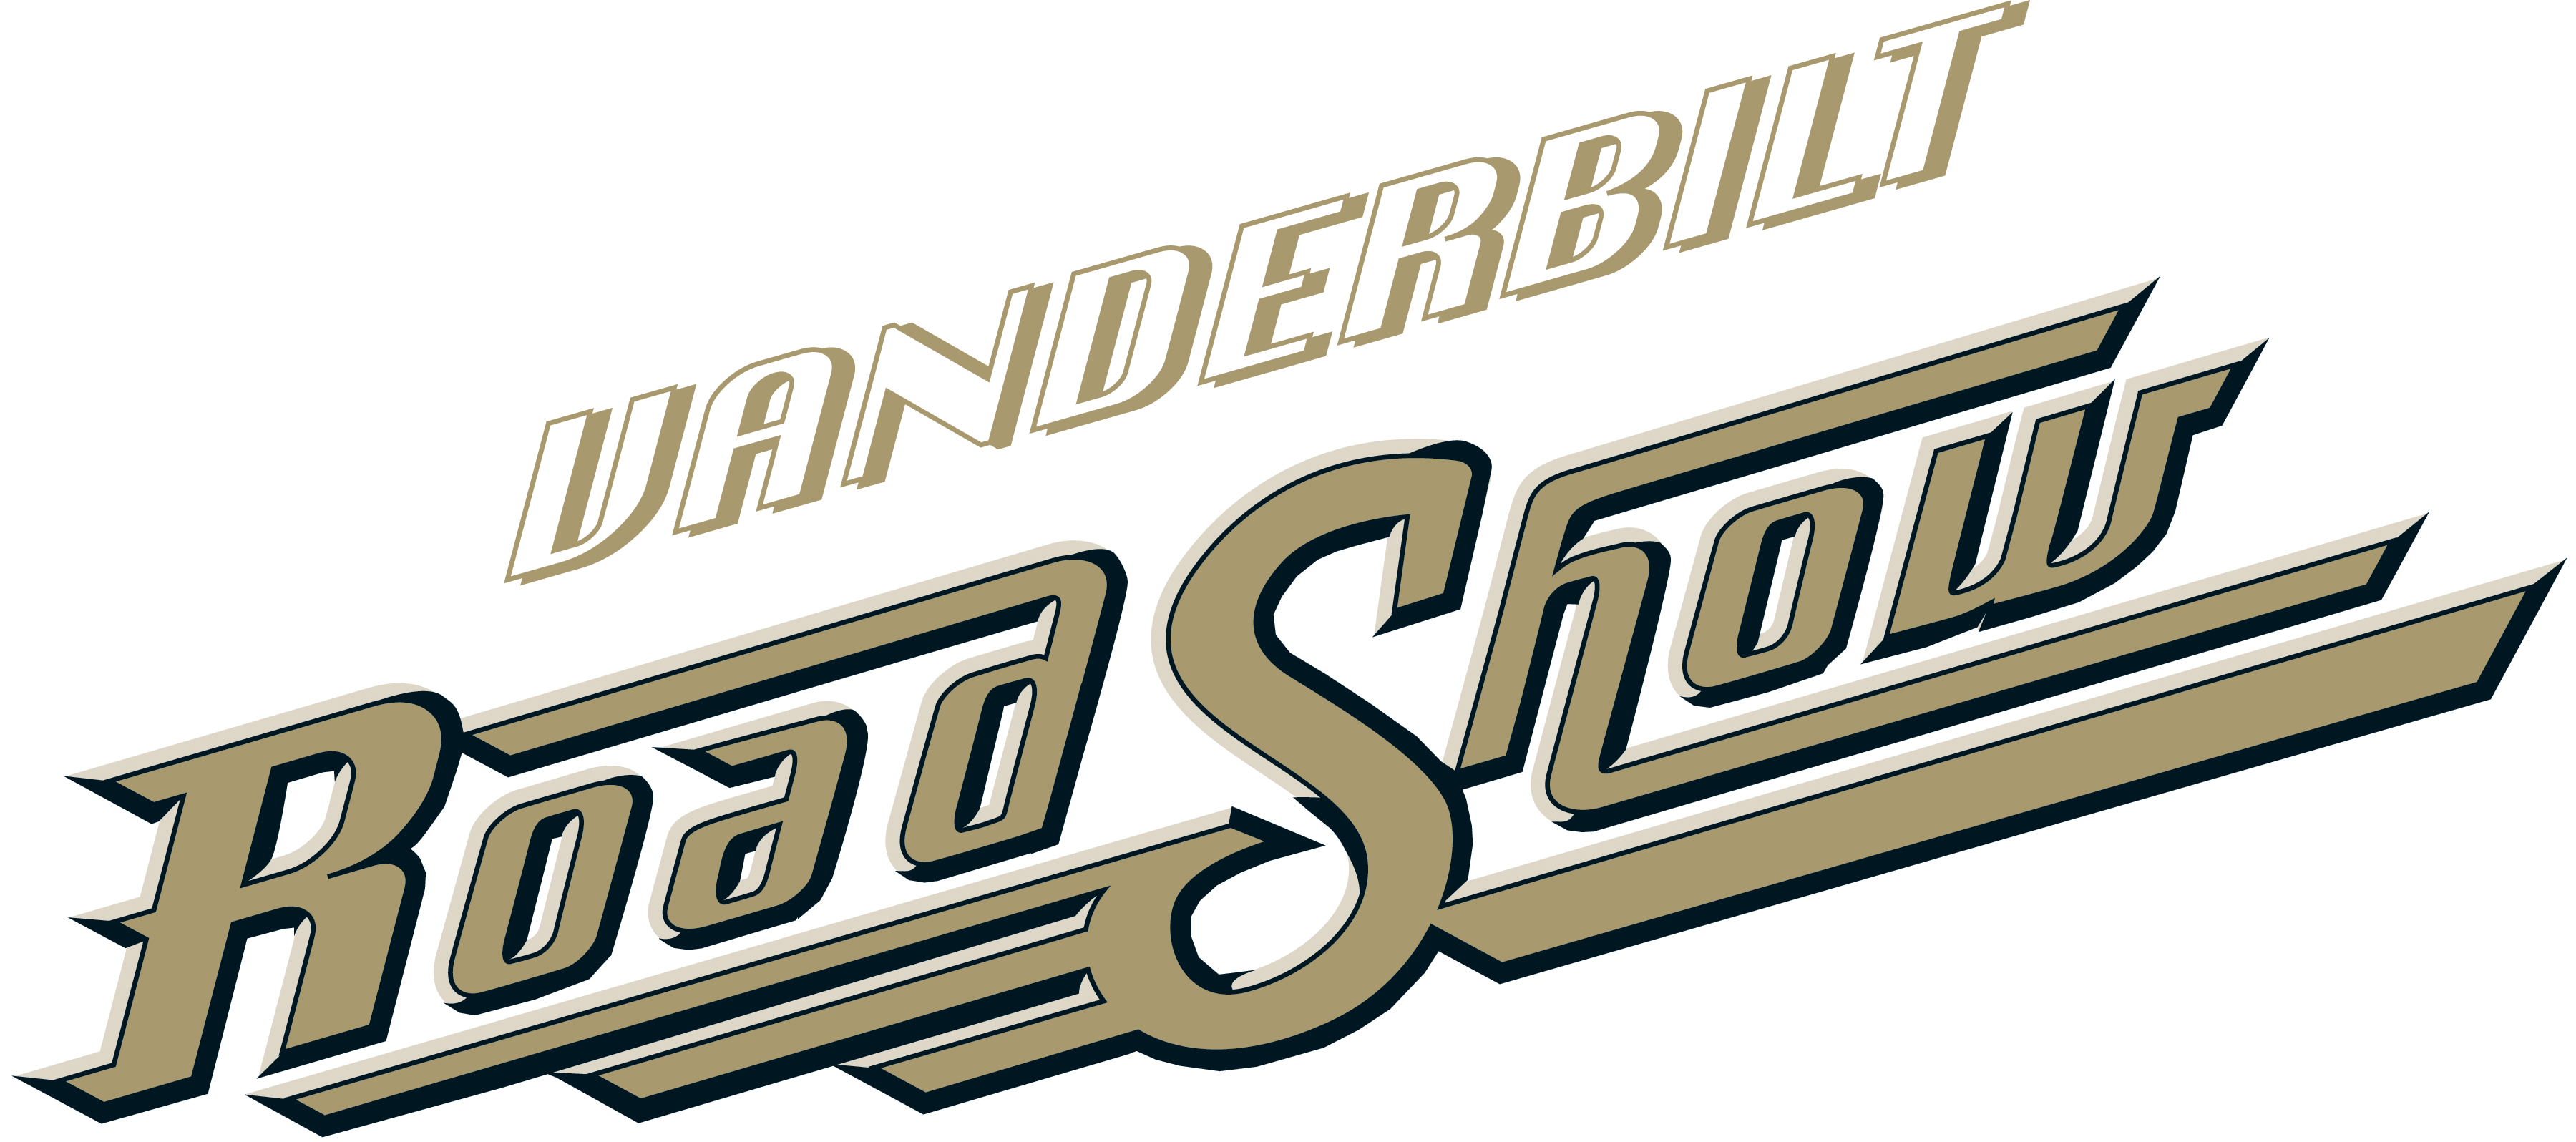 Роуд шоу. RS логотип. Vanderbilt лого. Тяжёлая поездка логотип.